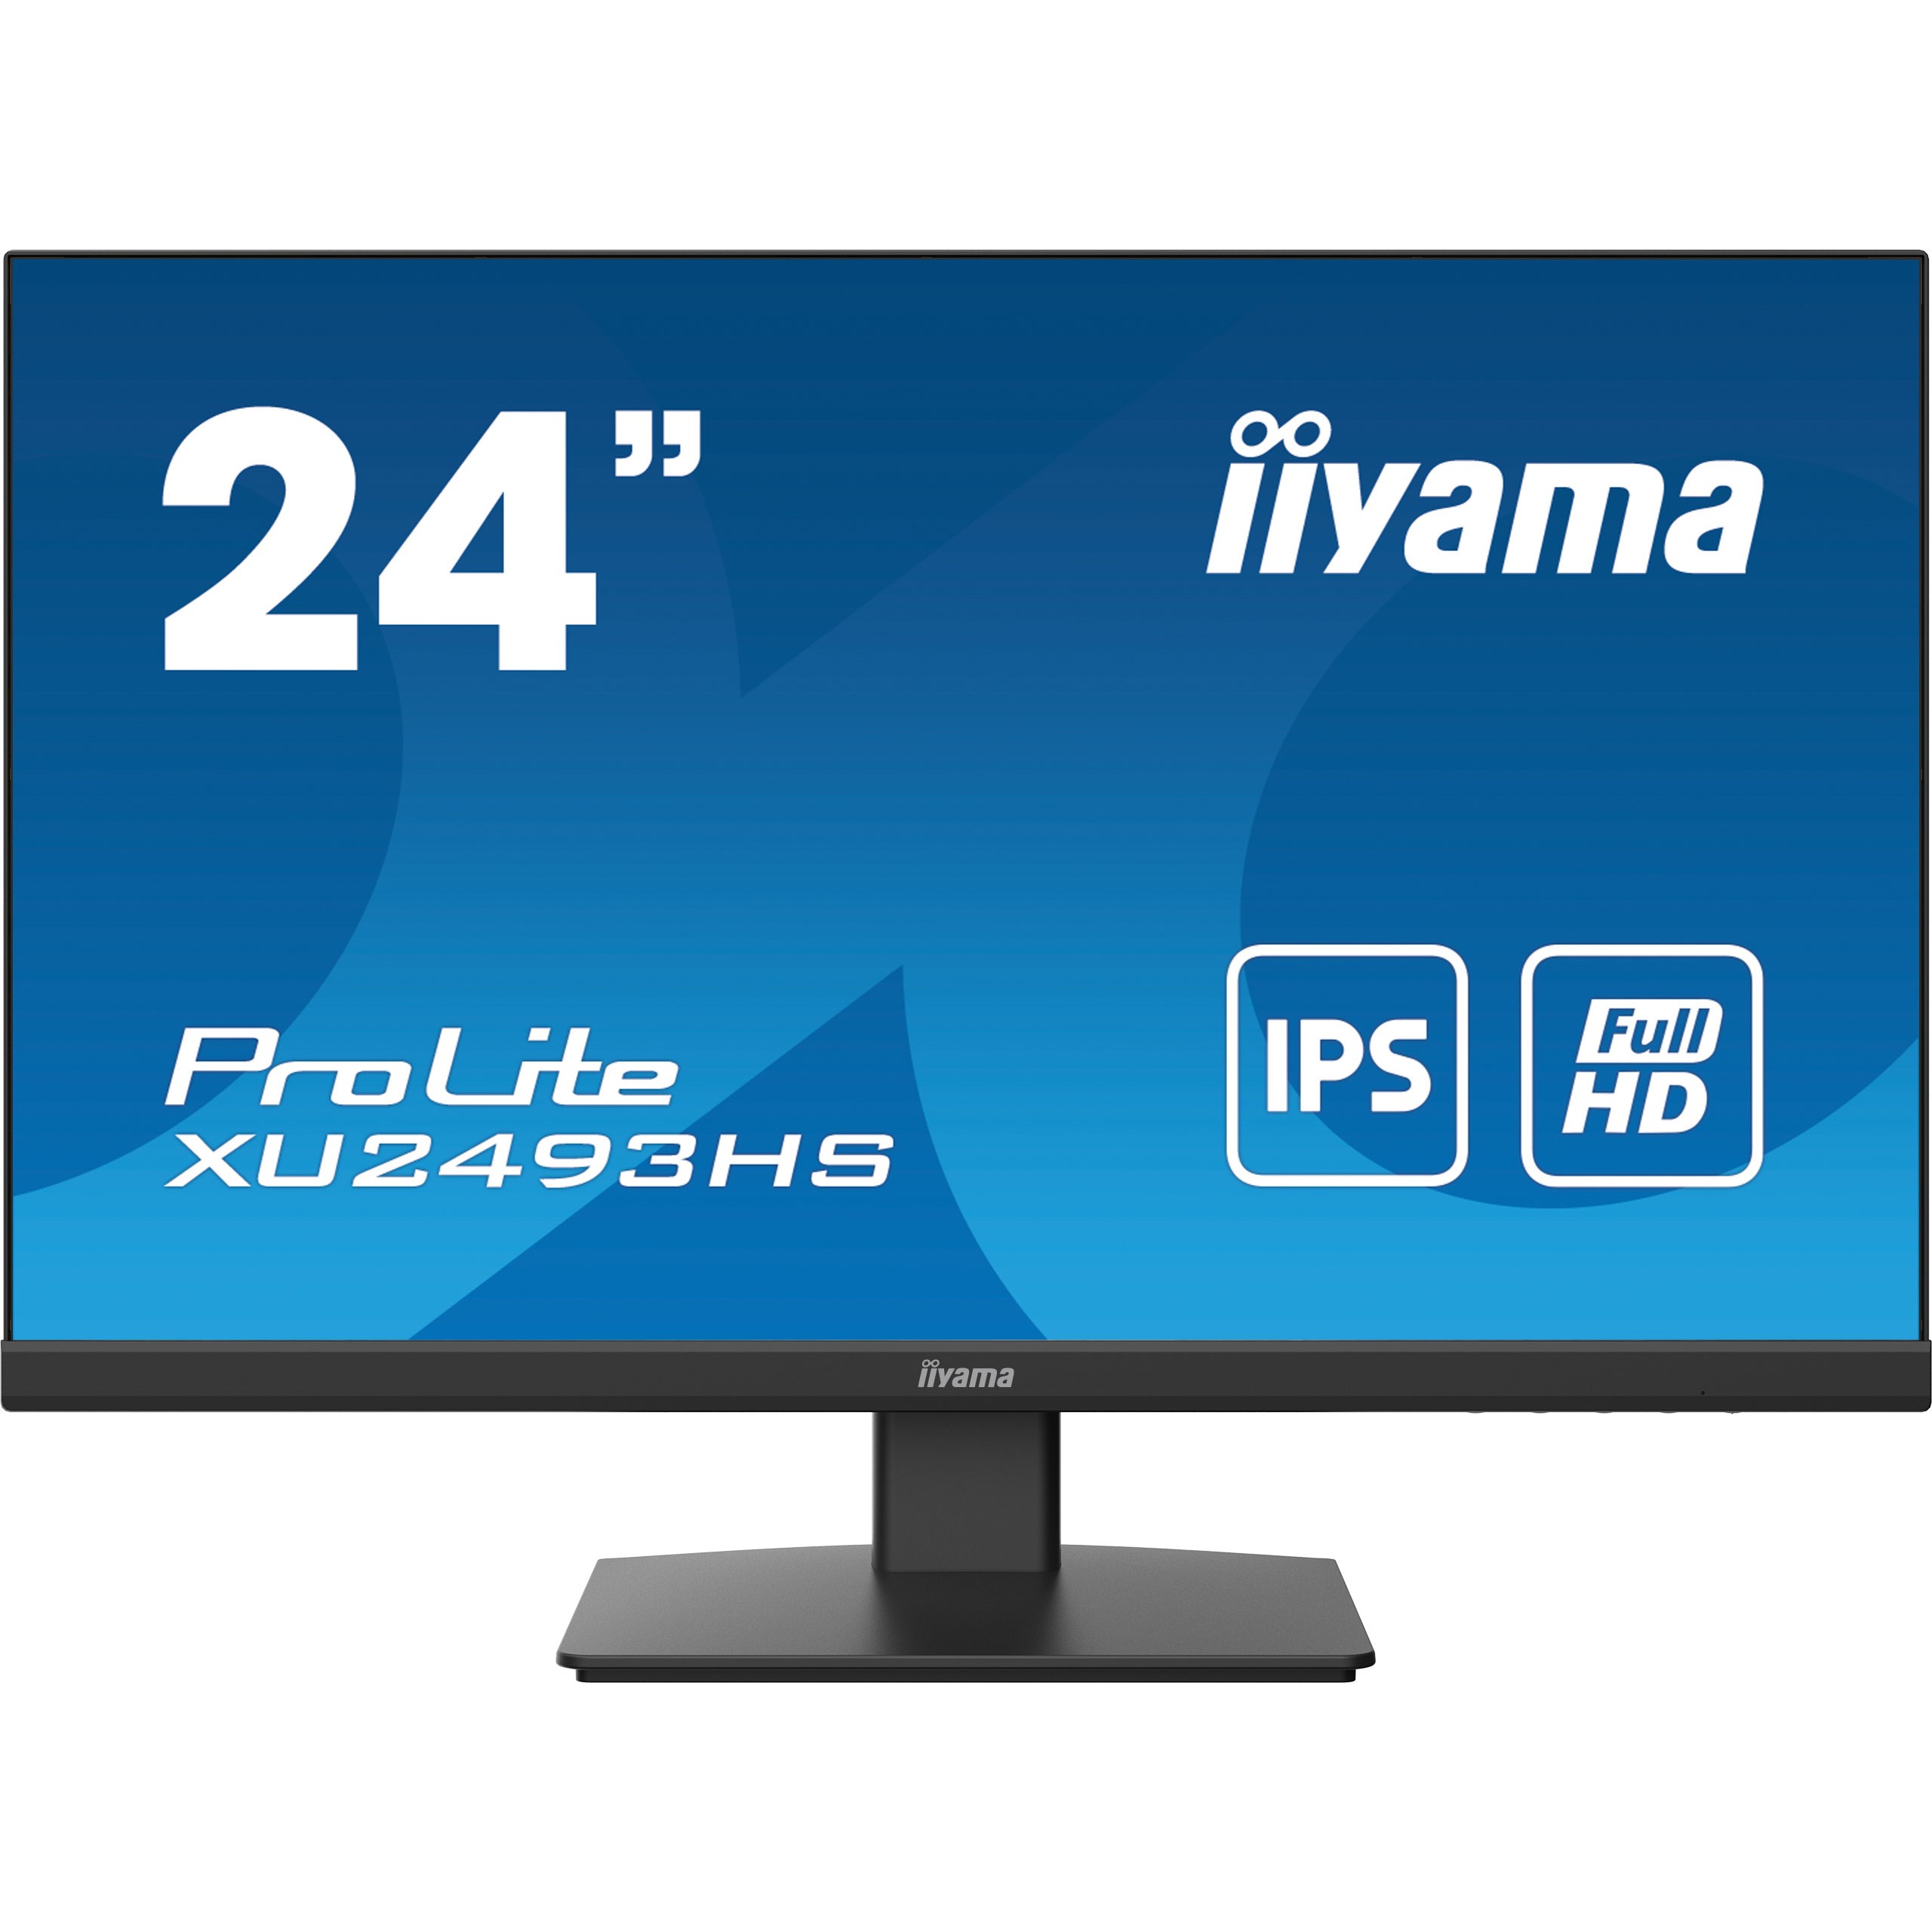 iiyama XU2493HS-B5 computer monitor - XU2493HS-B5